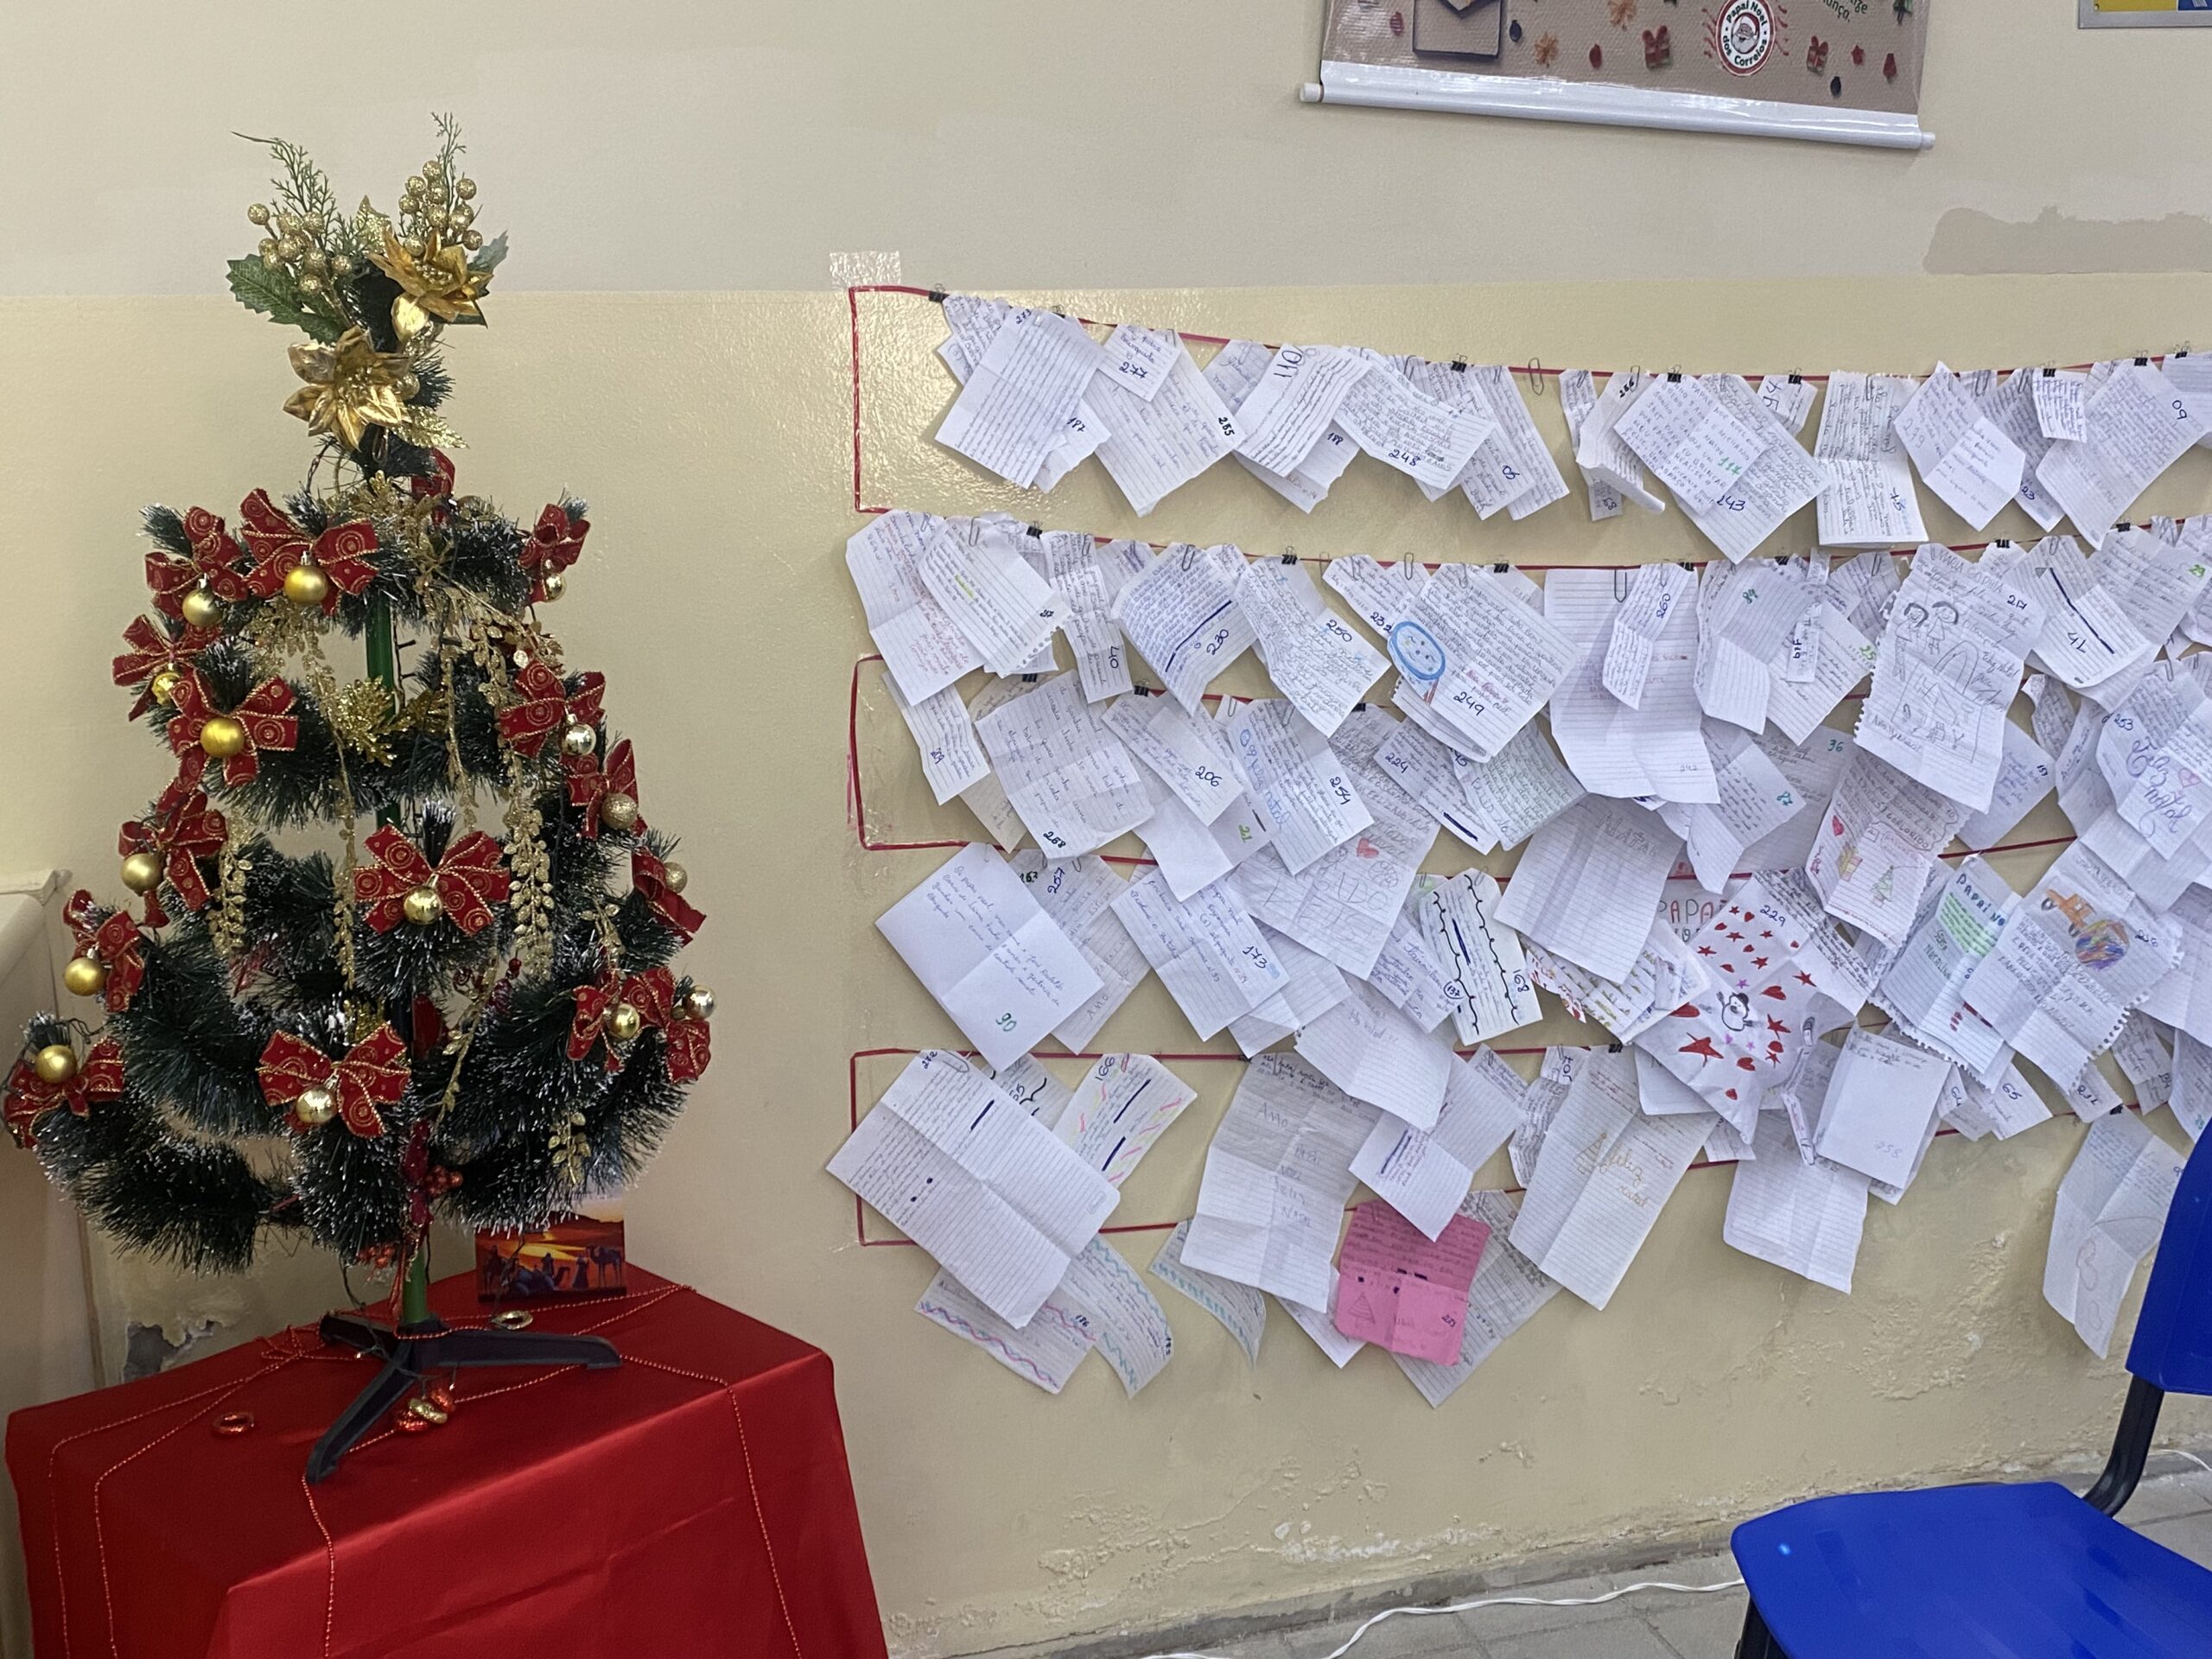 Correios de ST já recebeu mais de 380 pedidos ao Papai Noel